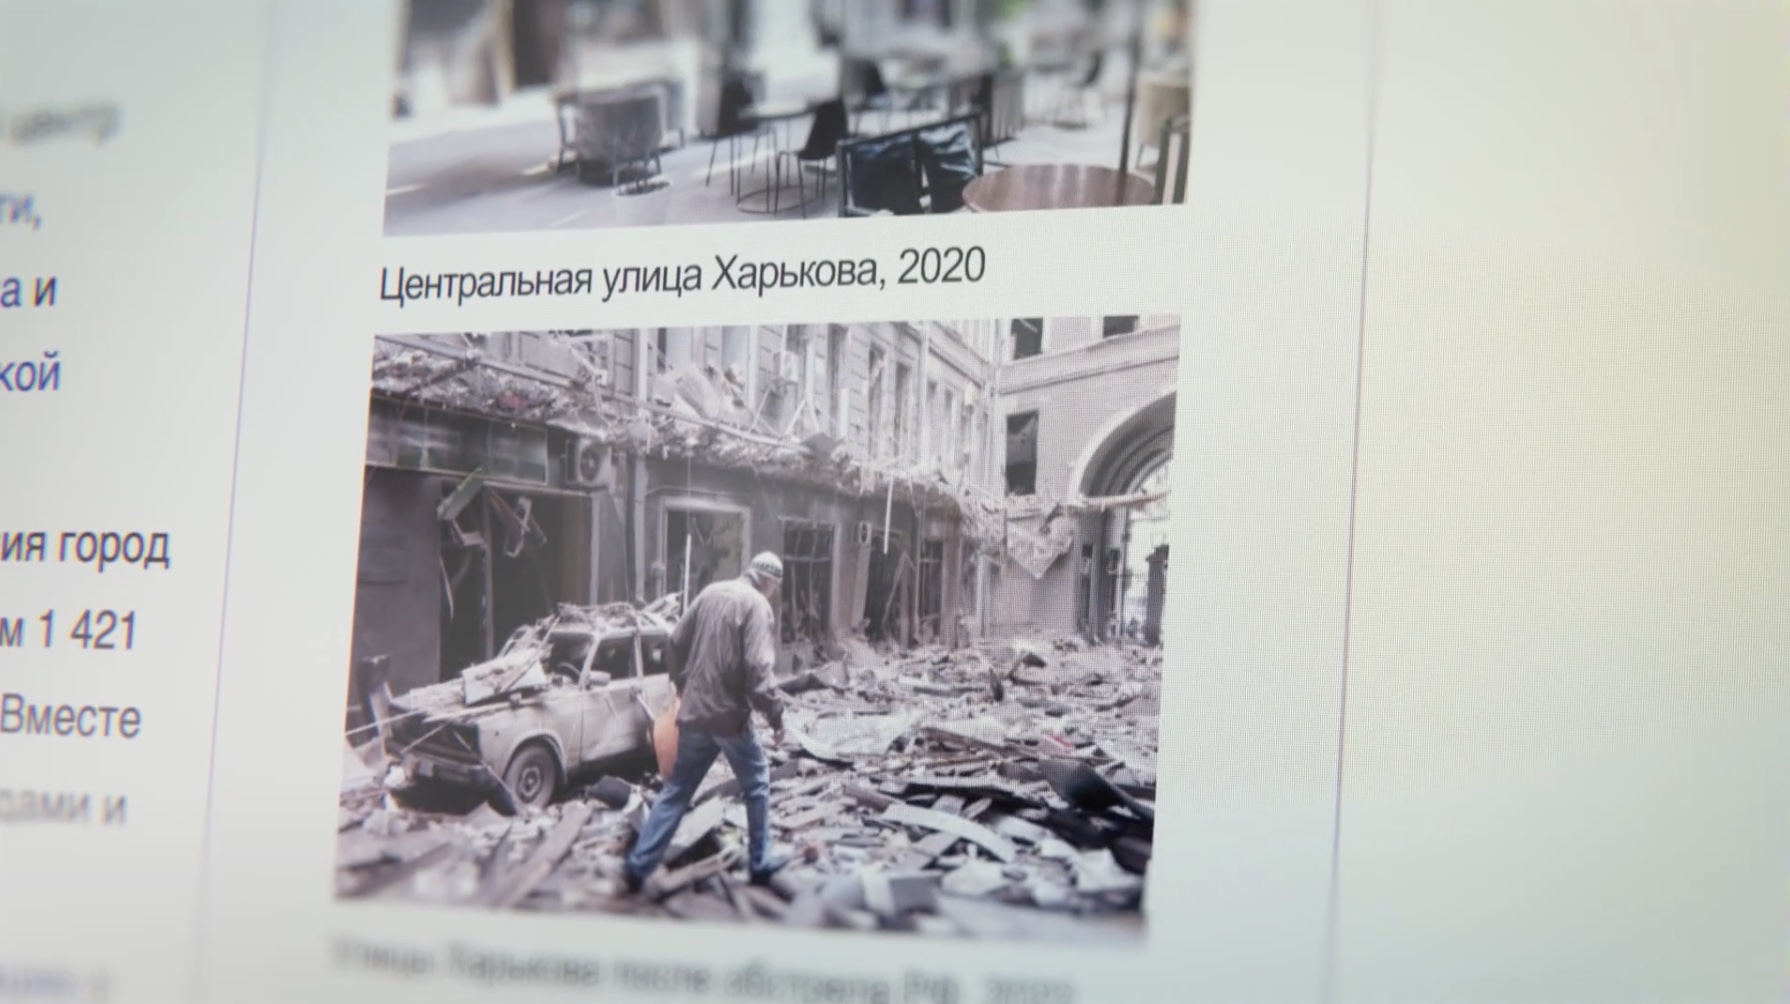 Publicis Groupe bestrijdt Russische propaganda met Wikipedia